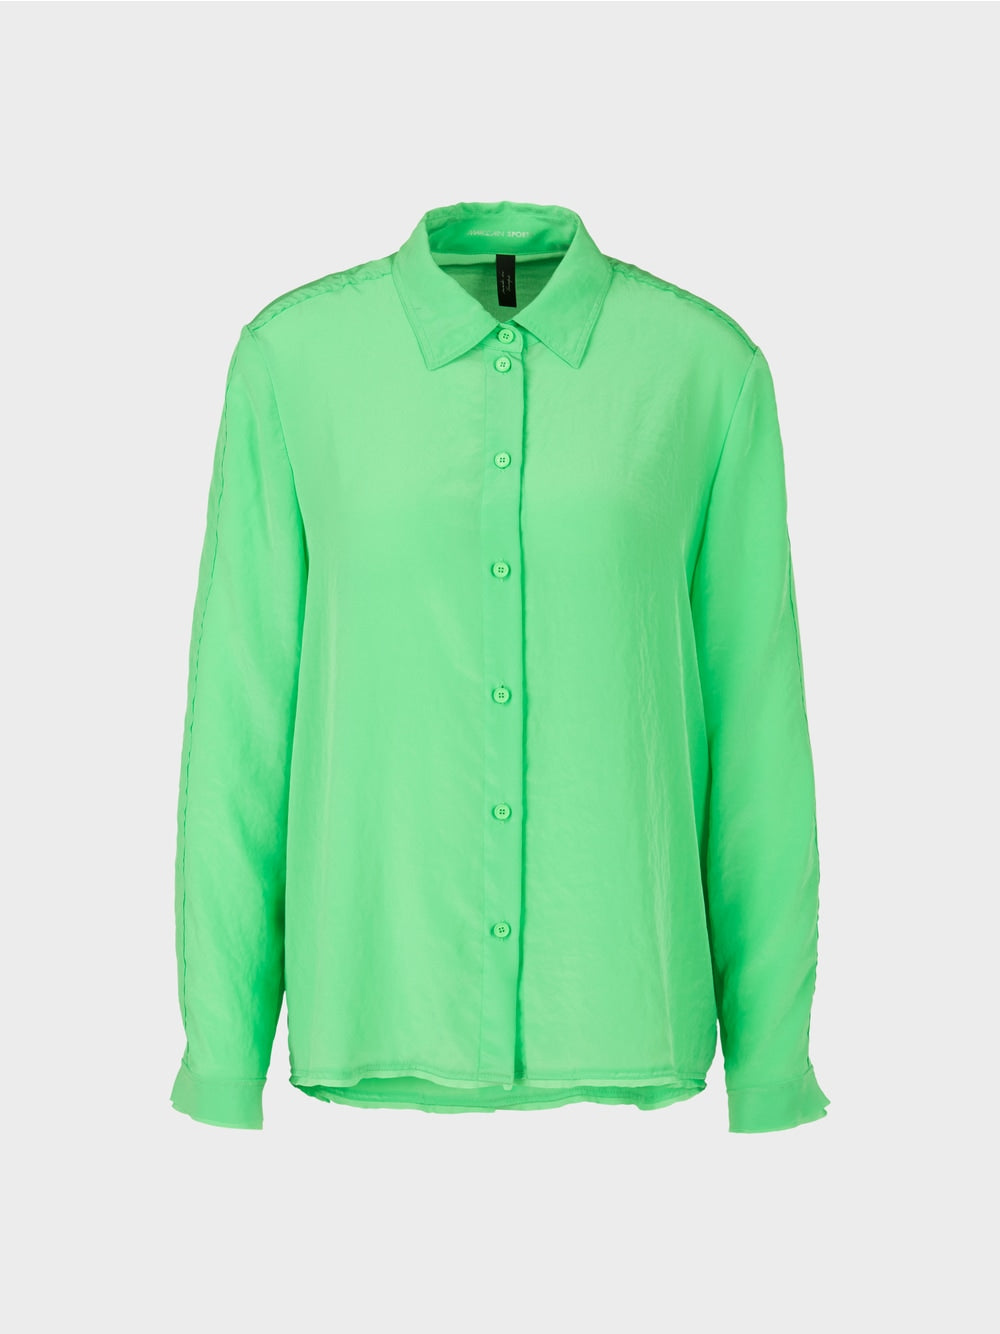 neon green shirt blouse